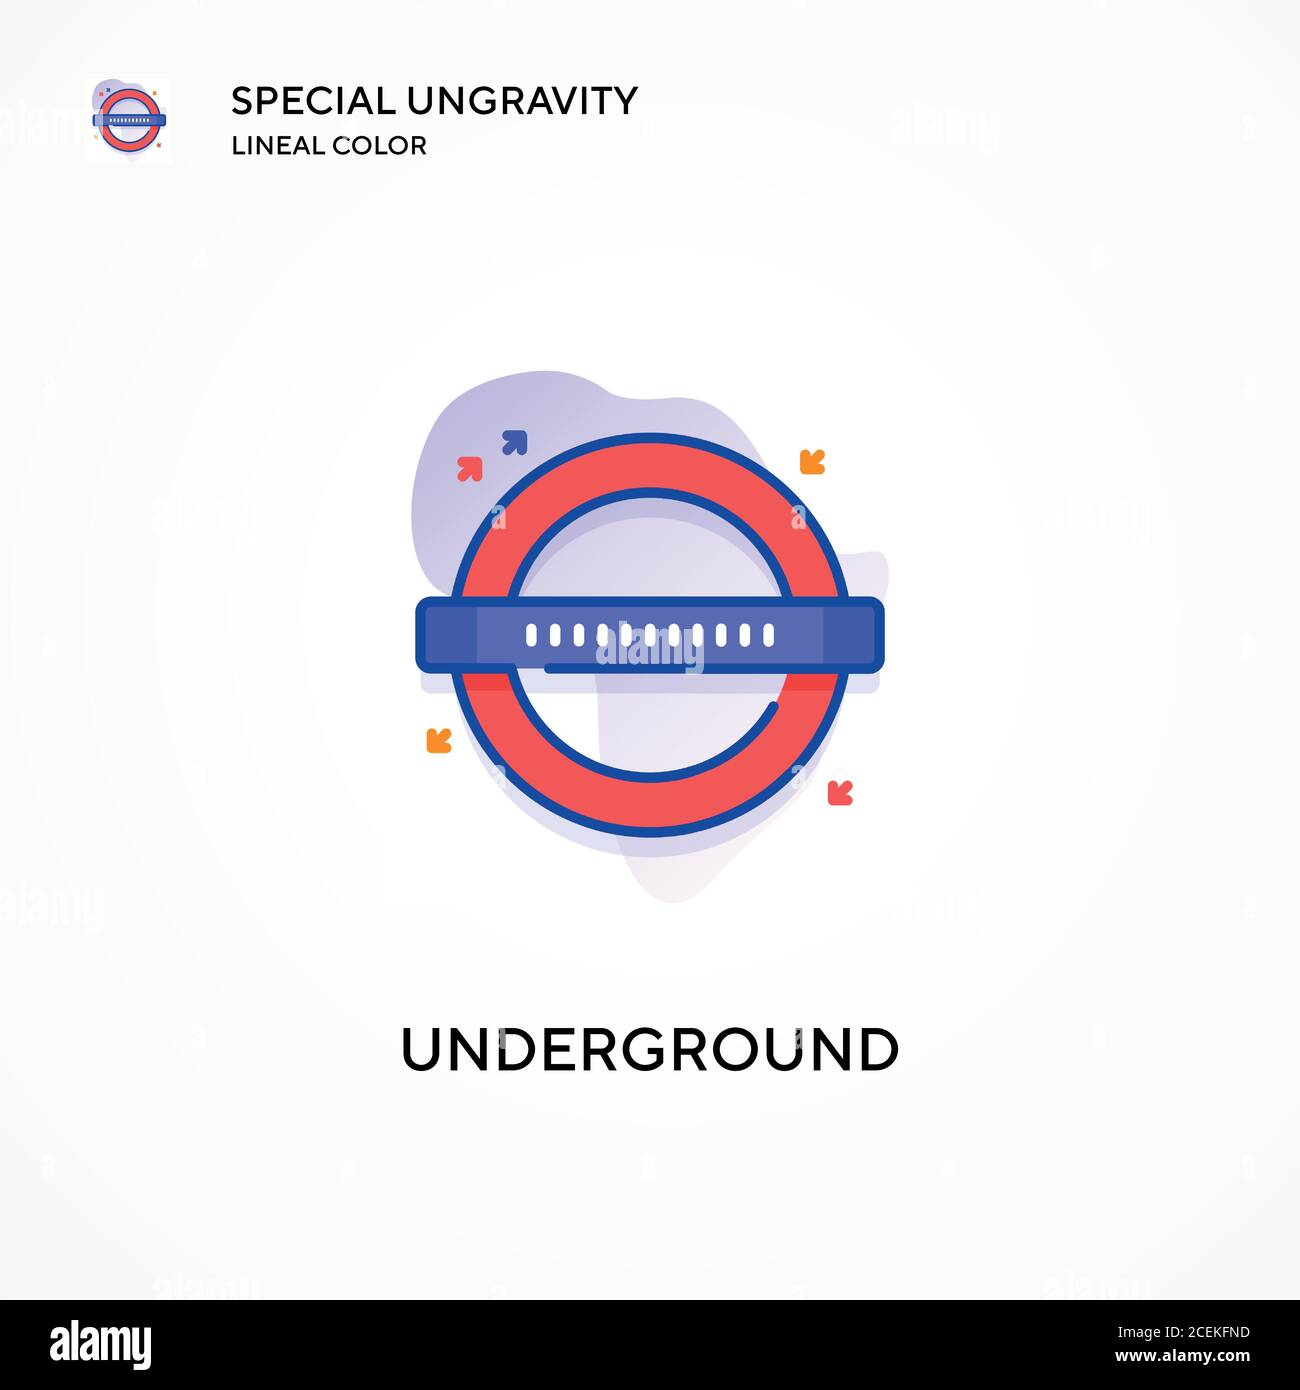 Underground spezielle Ungravity lineare Farbe Symbol. Moderne Vektorgrafik Konzepte. Einfach zu bearbeiten und anzupassen. Stock Vektor